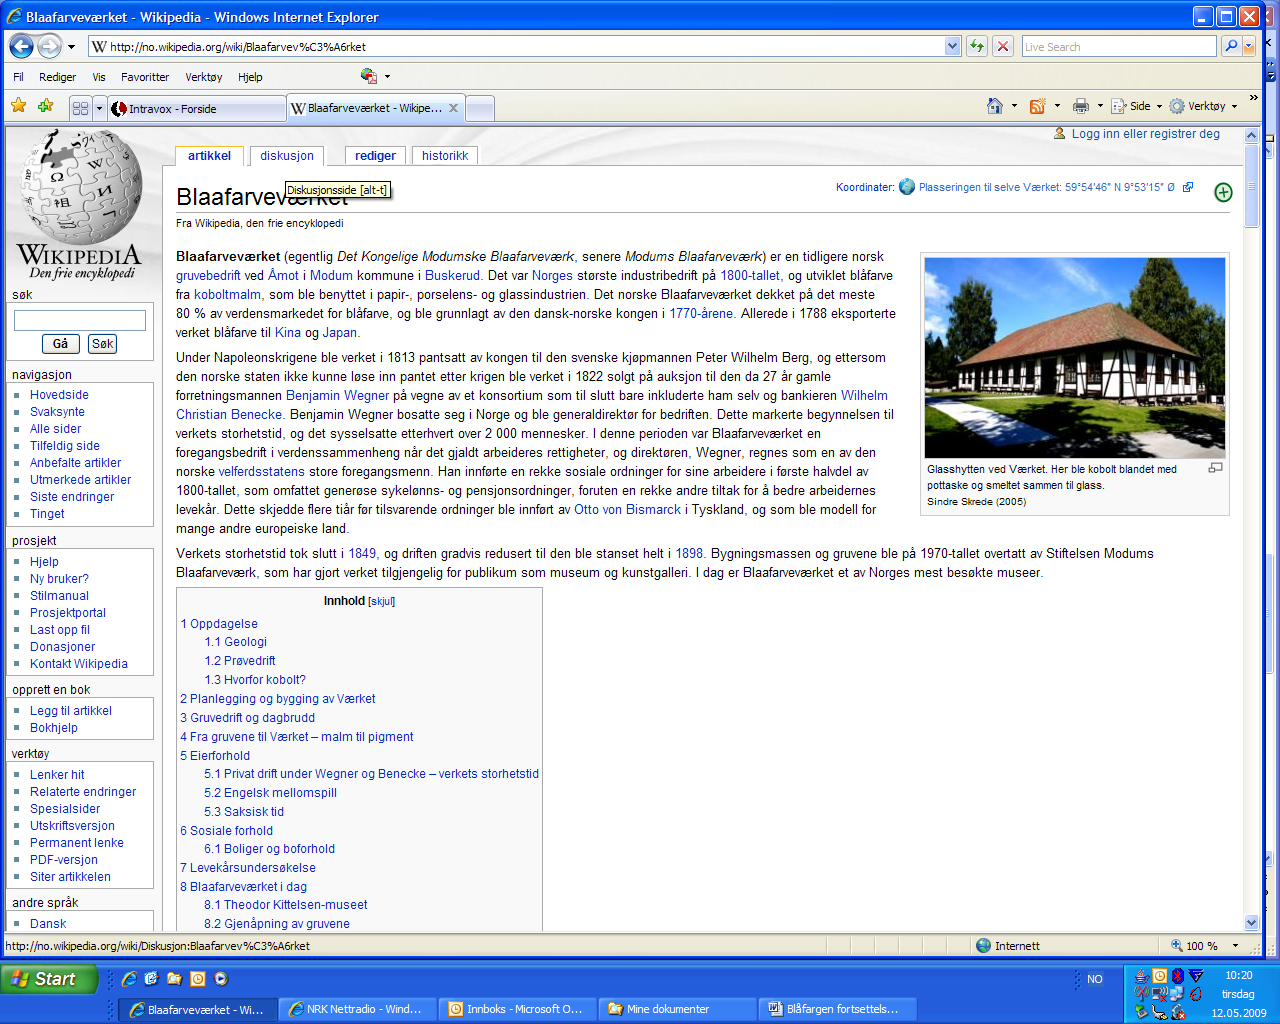 4. Gå også inn på www.wikipedia.no og skriv inn «Blaafarveværket» i søkerubrikken. Her kan du finne enda mer informasjon om du vil. Se bildet av siden nedenfor. 5. Sammenlikn de to nettstedene. 6.